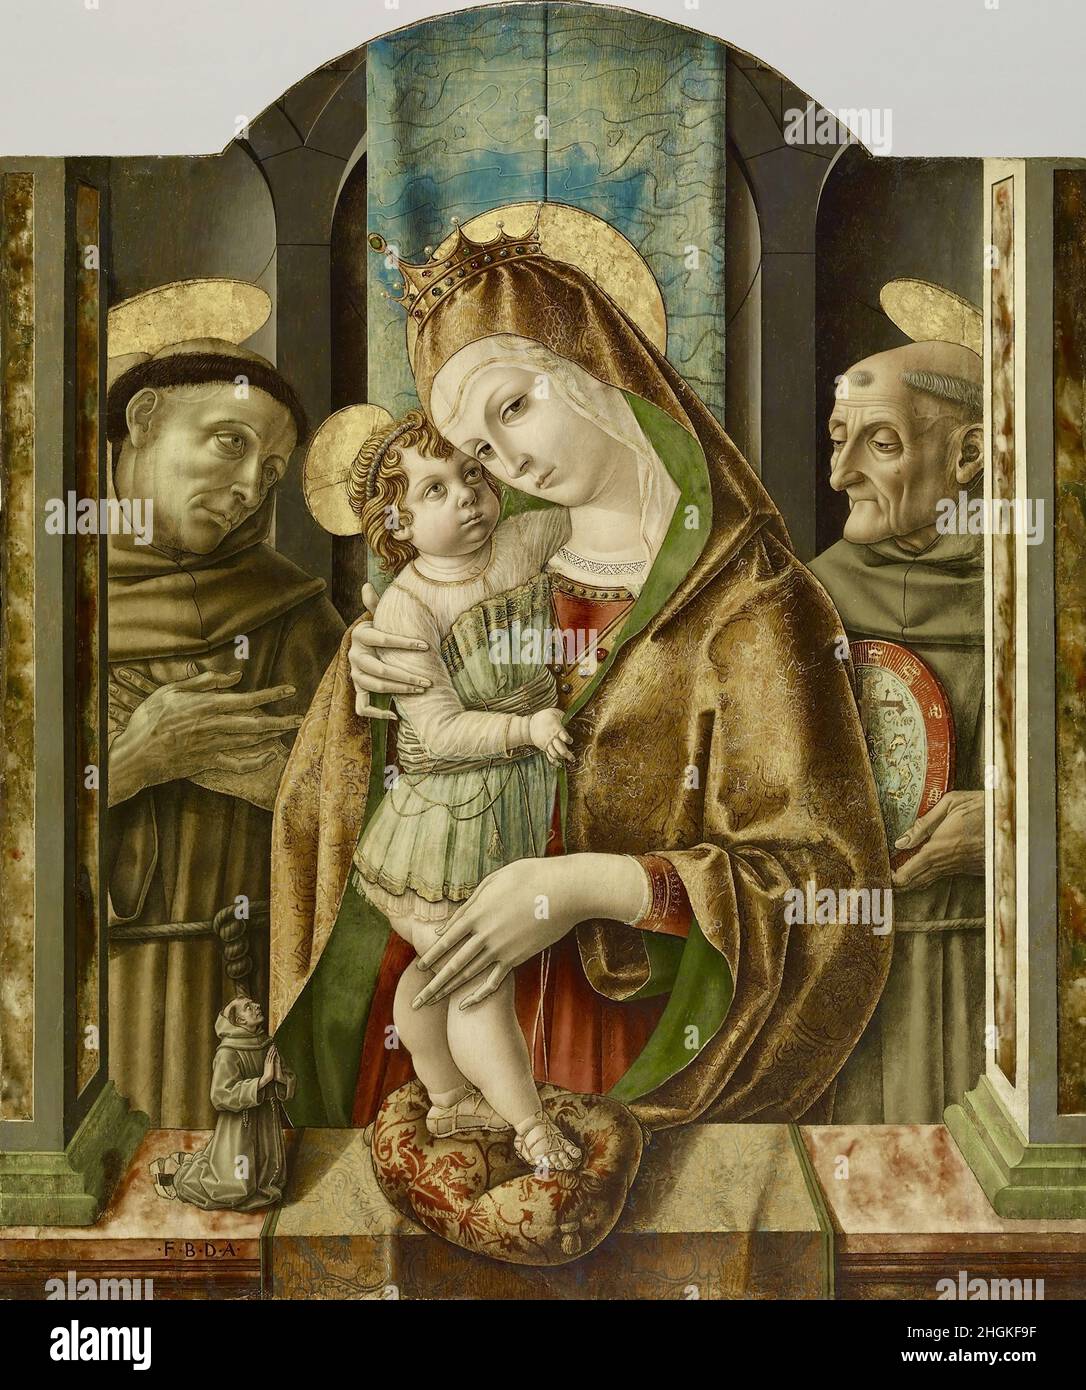 Virgin and Child with Saints and Donor - 1490c. - tempera e foglia d'oro su tavola 97,8 x 82,5 cm - Crivelli Carlo Stock Photo